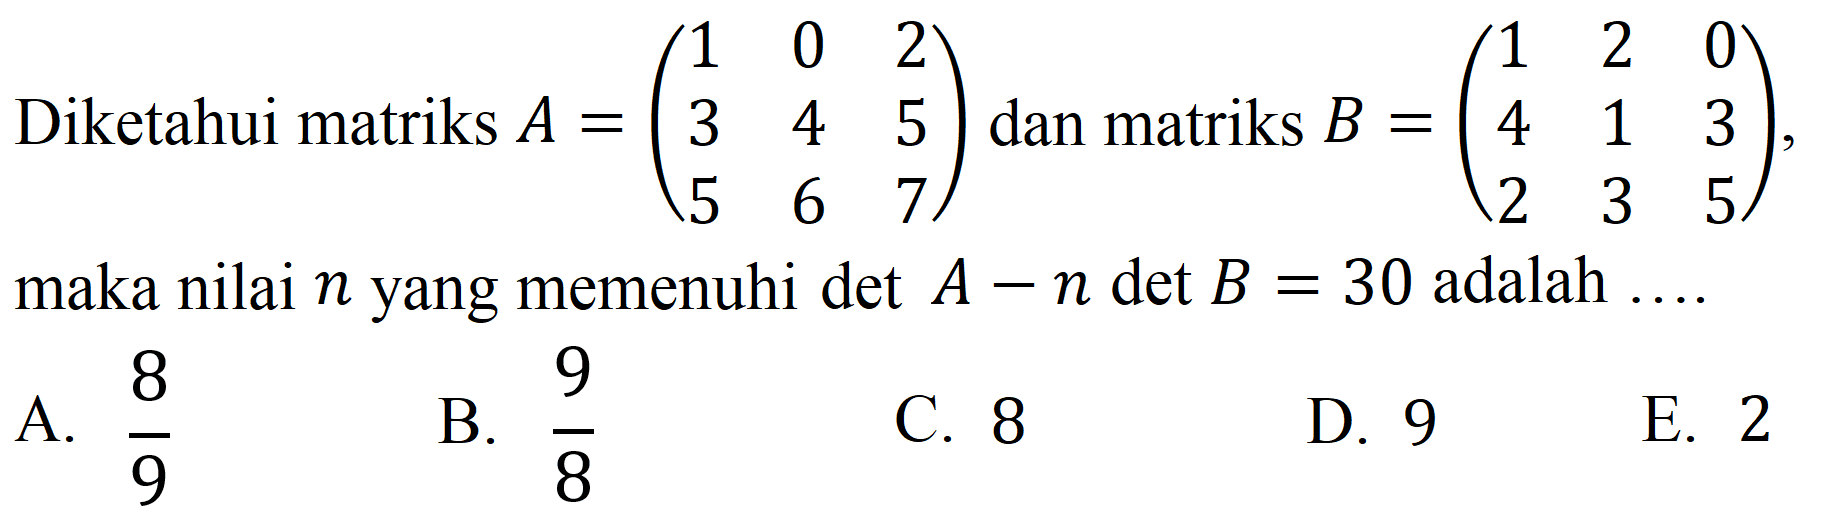 Diketahui matriks  A=(1  0  2  3  4  5  5  6  7)  dan matriks  B=(1  2  0  4  1  3  2  3  5) , maka nilai  n  yang memenuhi  A-n det B=30  adalah ....
A.  8 / 9 
C. 8
E. 2
B.  9 / 8 
D. 9